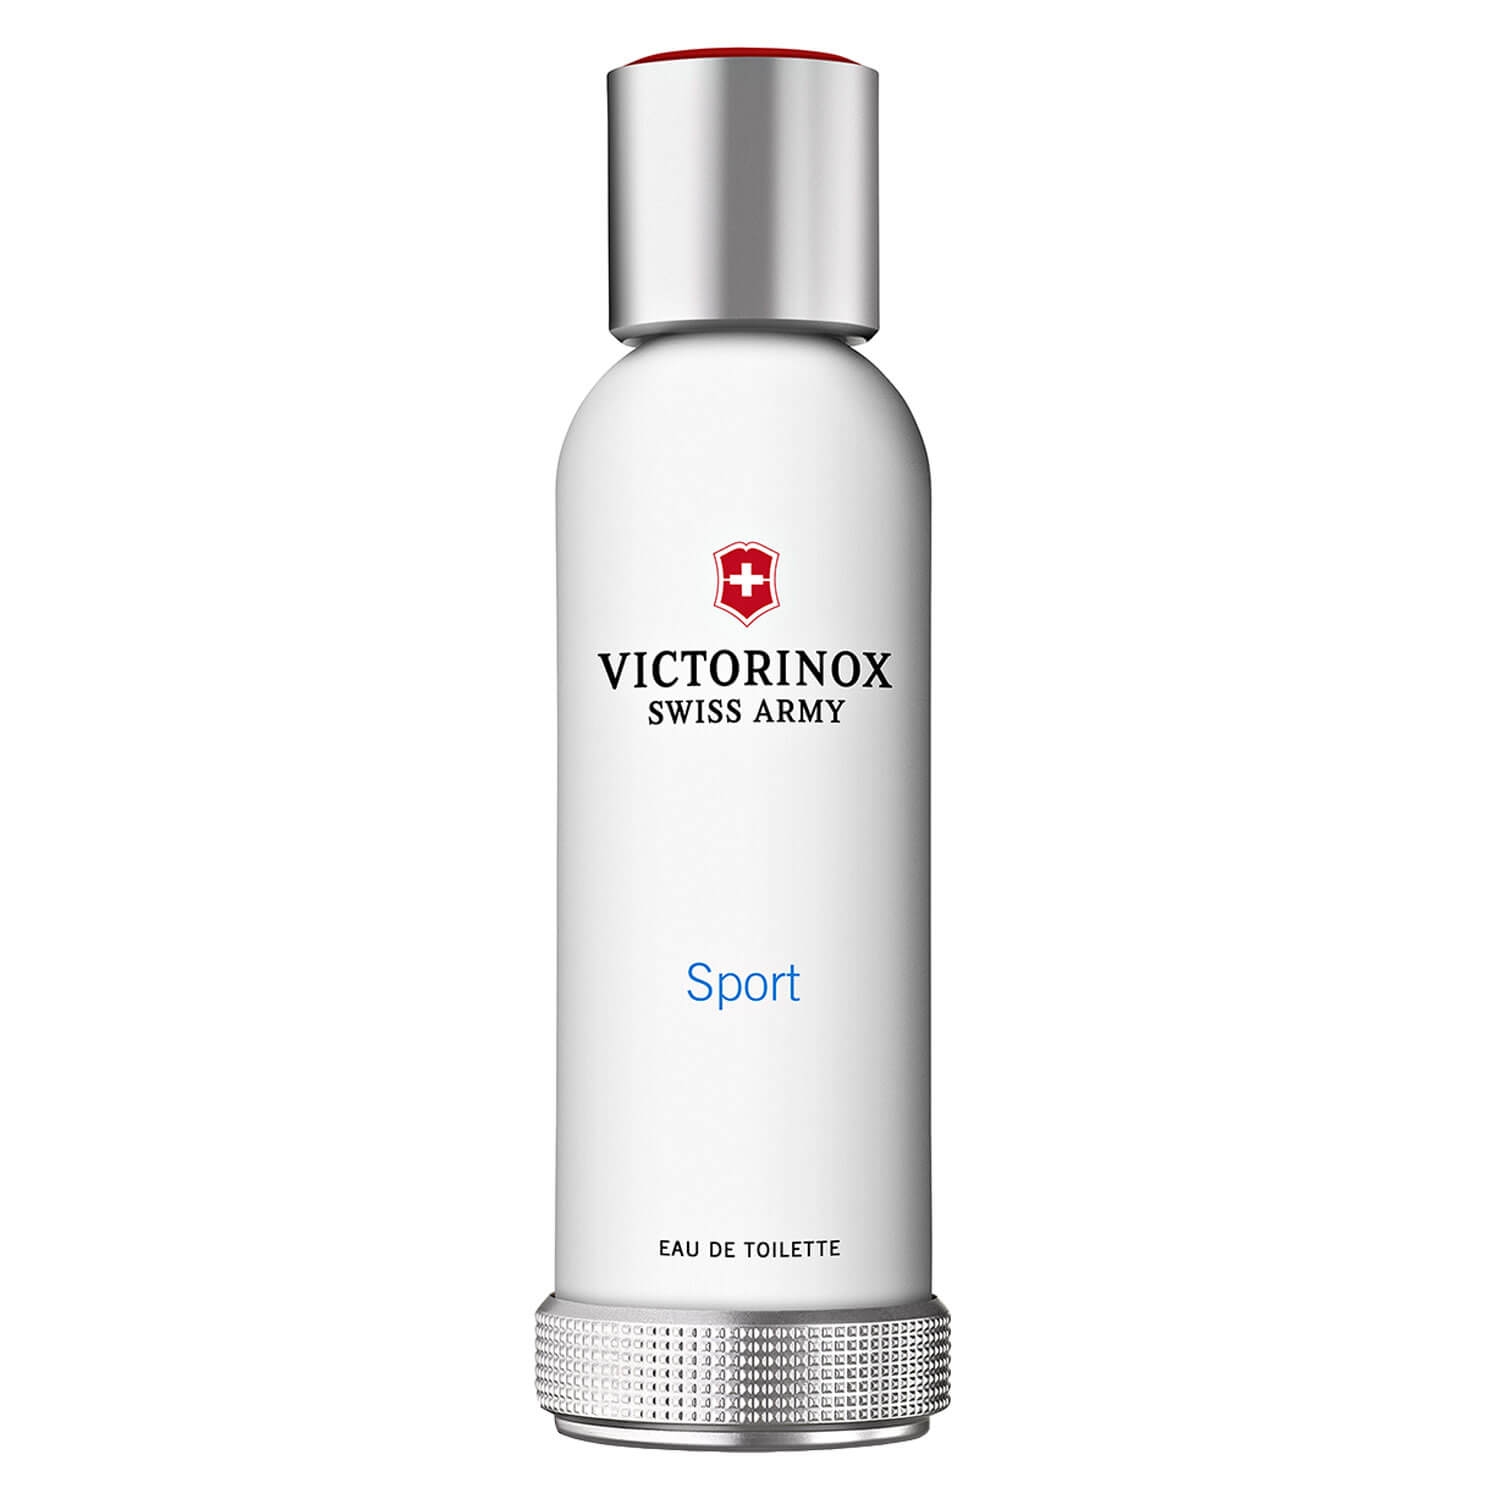 Produktbild von Victorinox Swiss Army - Sport Eau de Toilette